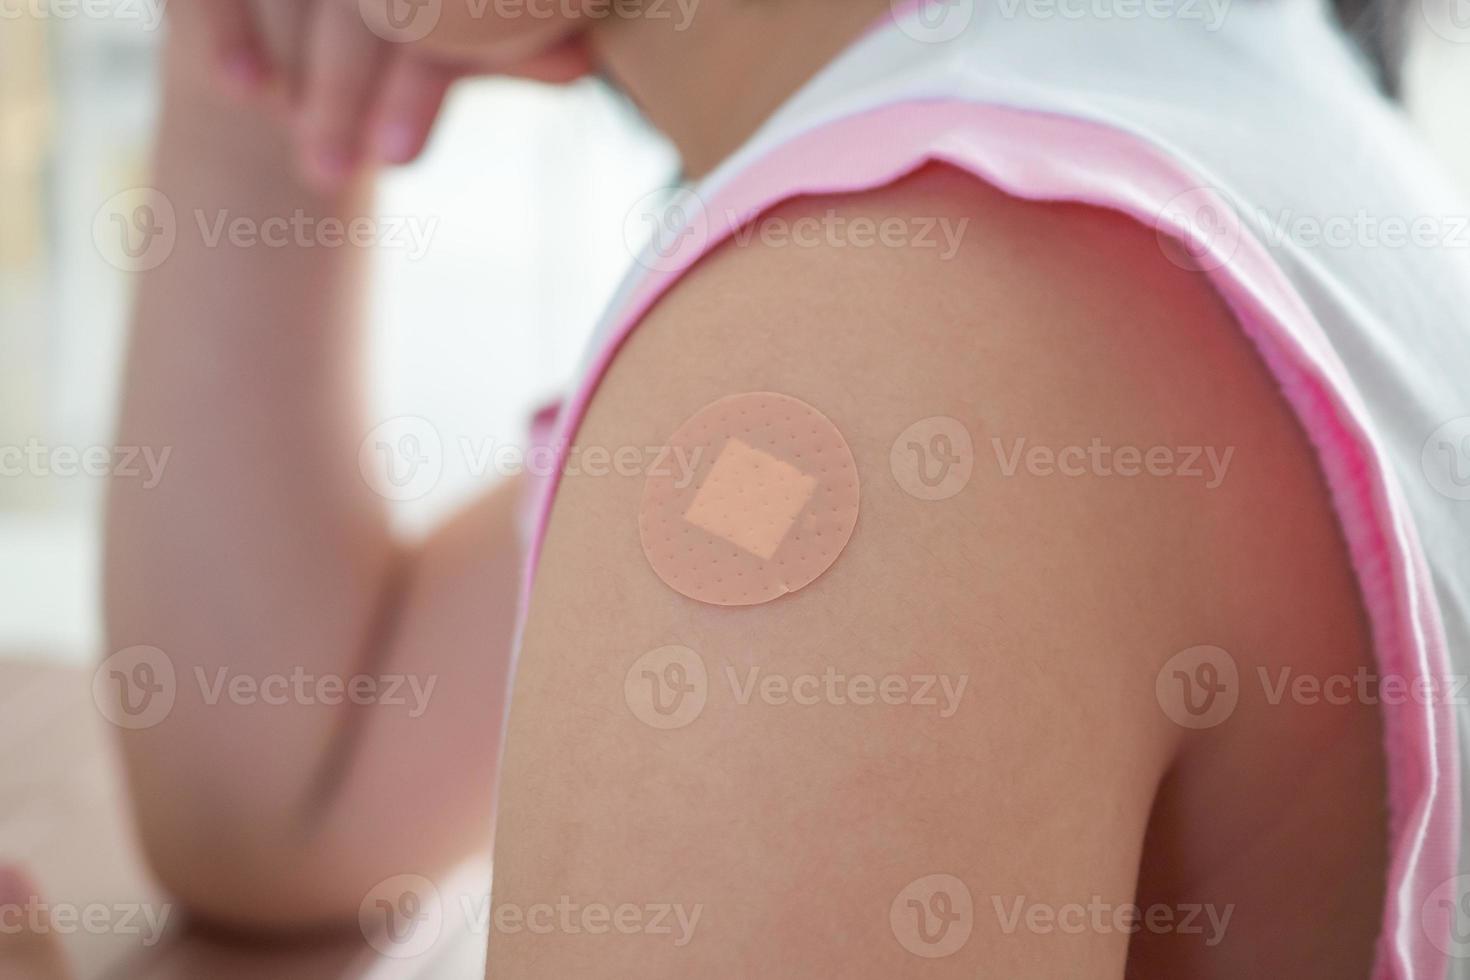 gevaccineerd weinig Aziatisch meisje met Zelfklevend gips na vaccin injectie foto